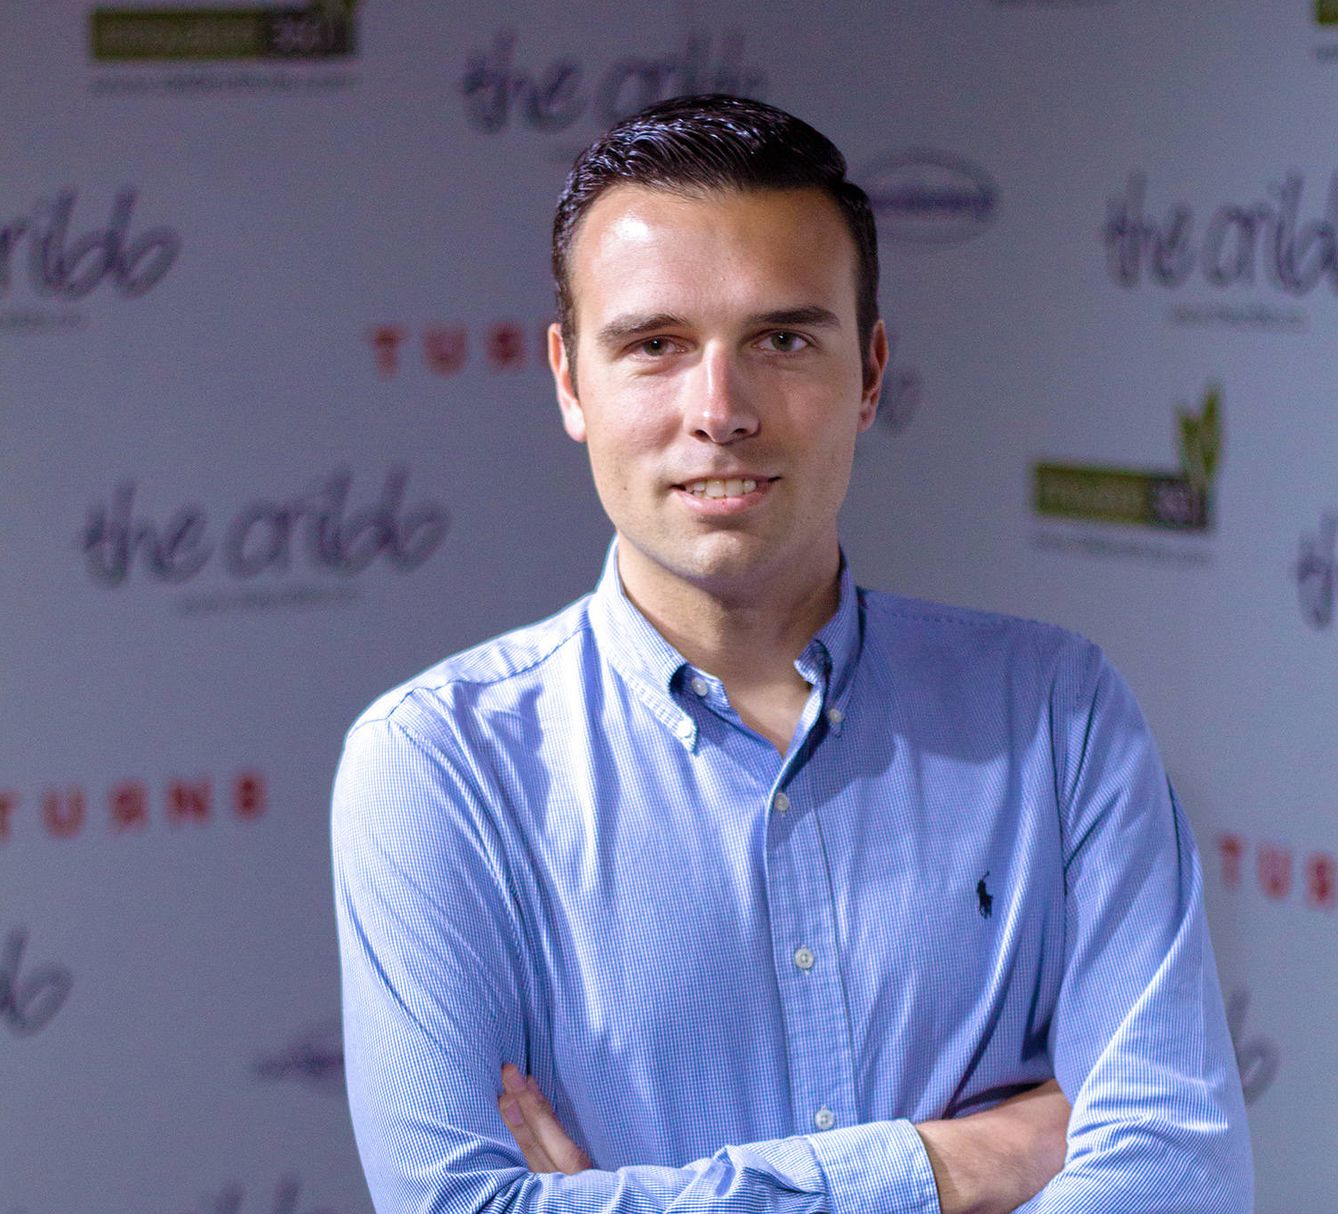 Pablo Martín Lozano, fundador de Meetizer. (Imagen: cedida por Pablo Martín Lozano)